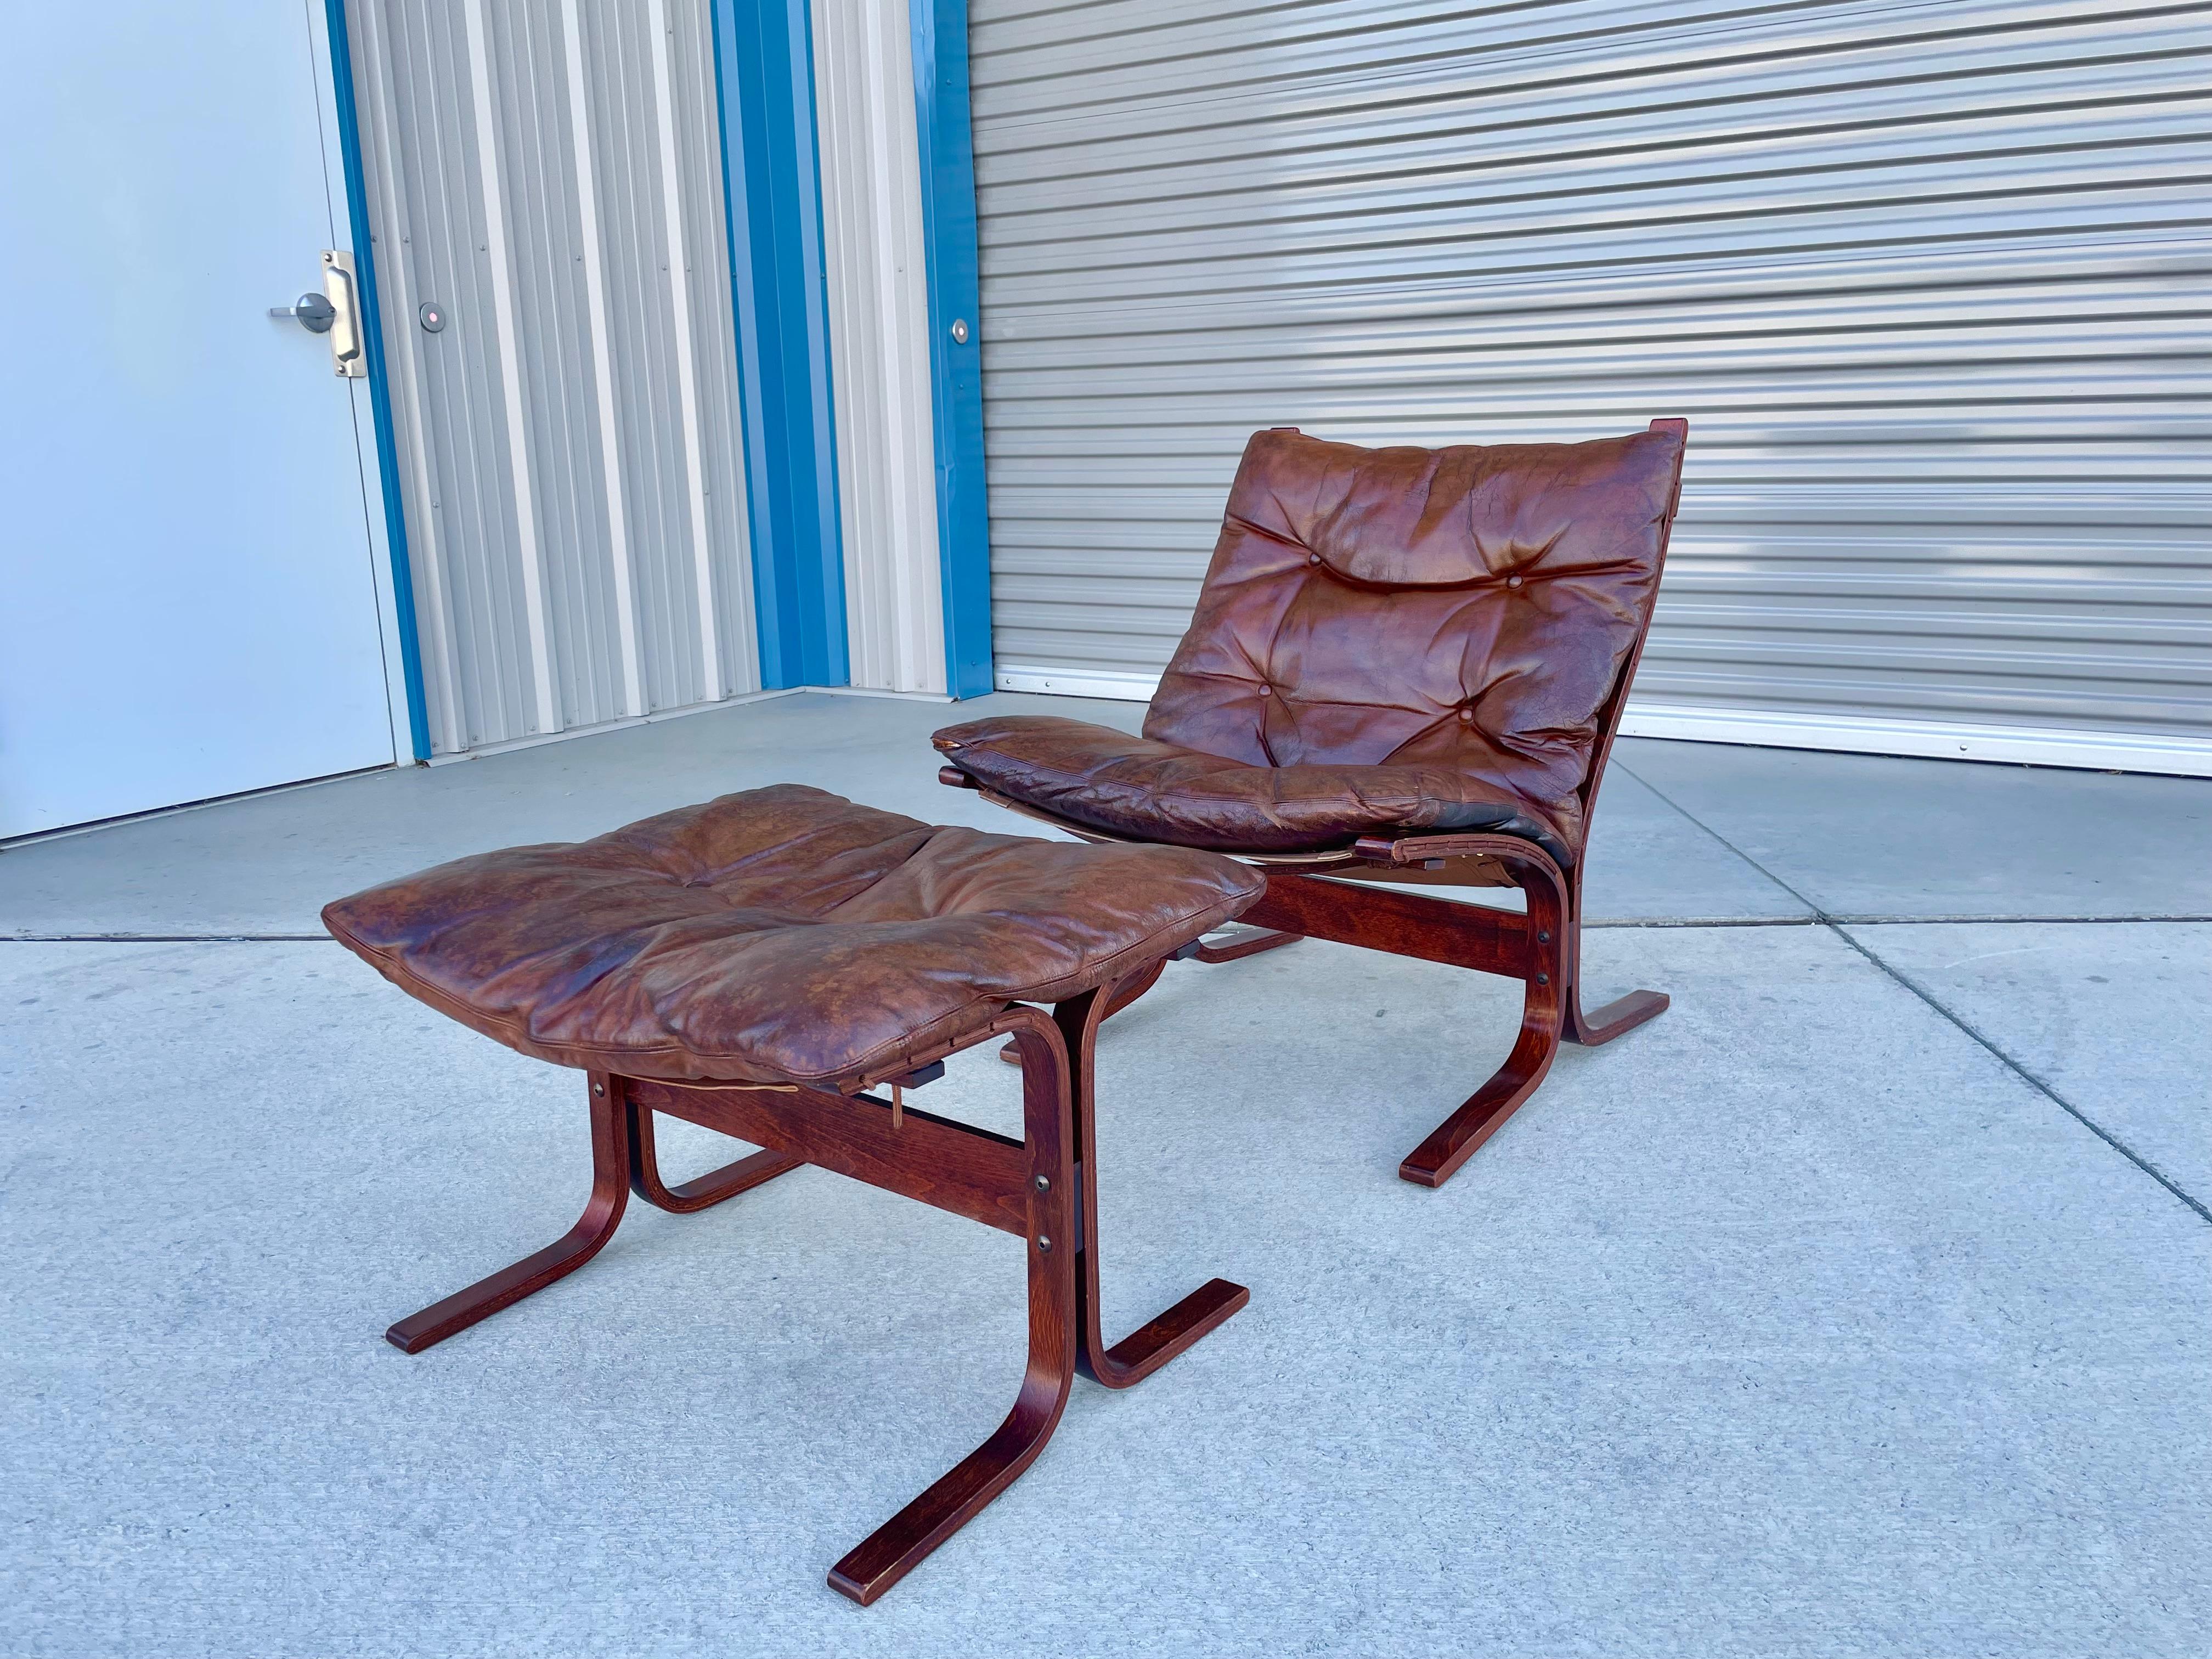 Cette chaise longue moderne danoise et son ottoman ont été conçus par Ingmar Relling et fabriqués par westnofa en Norvège vers les années 1960. Cette chaise de salon est absolument magnifique, avec un cadre élégant en bois courbé et un magnifique